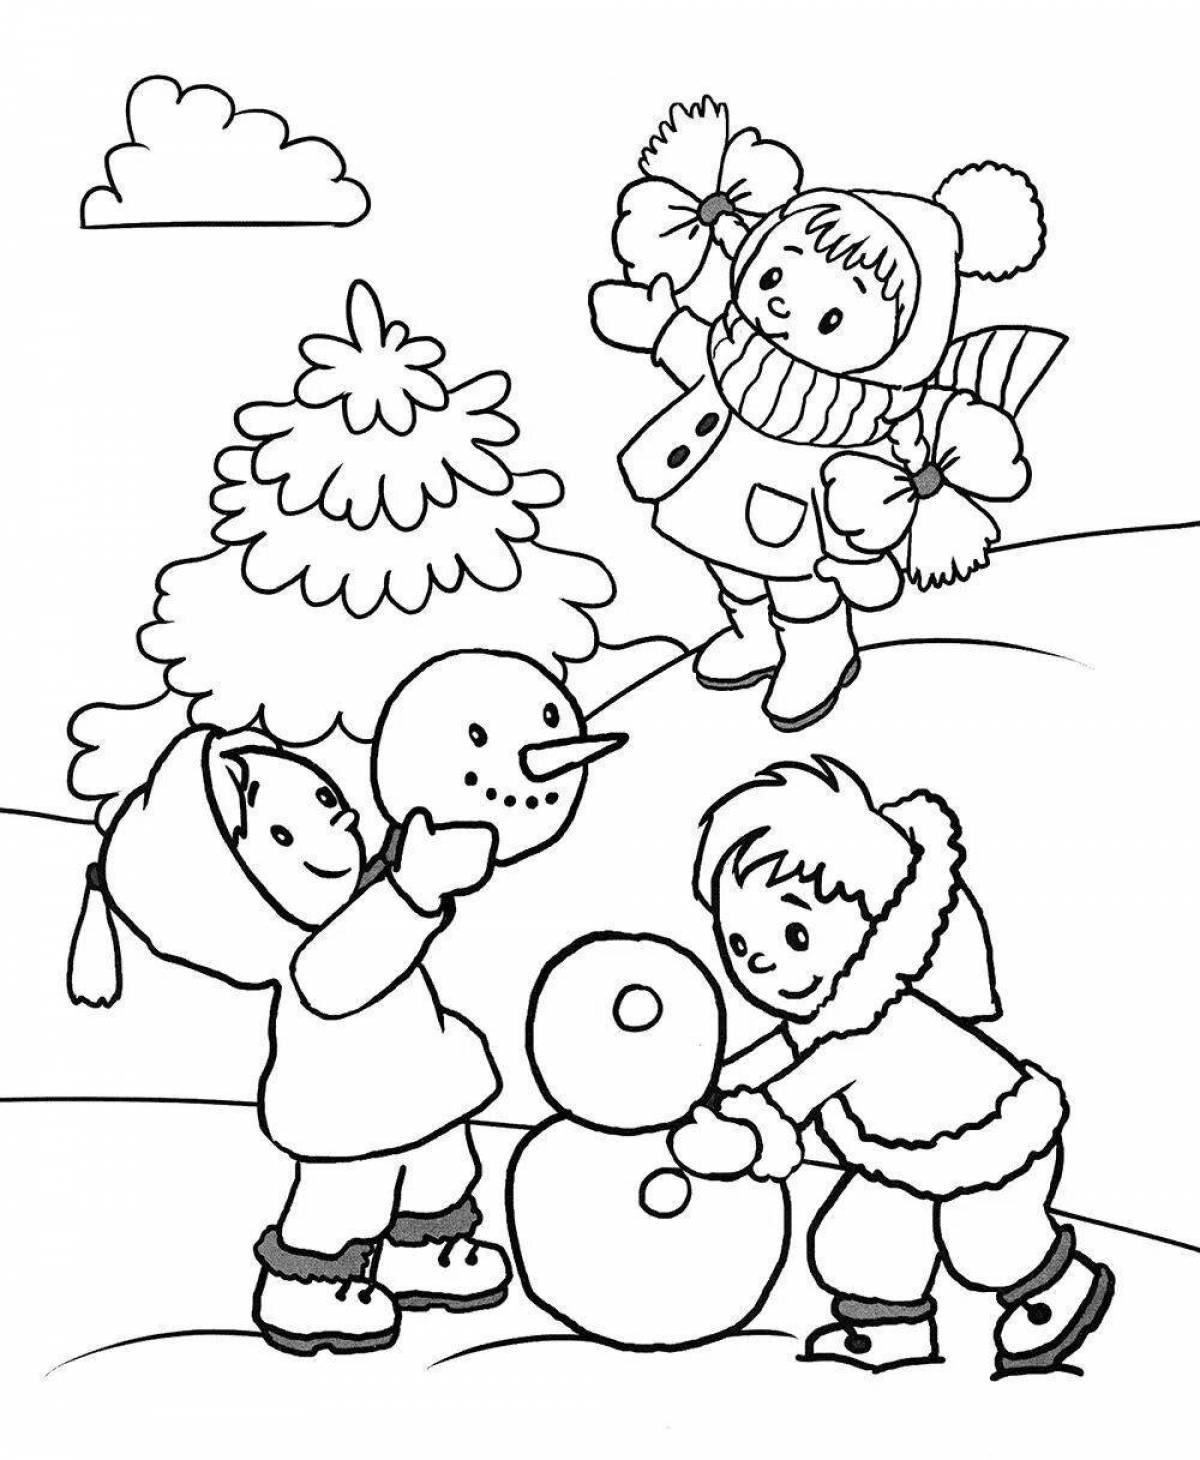 Luminous winter coloring book for kids